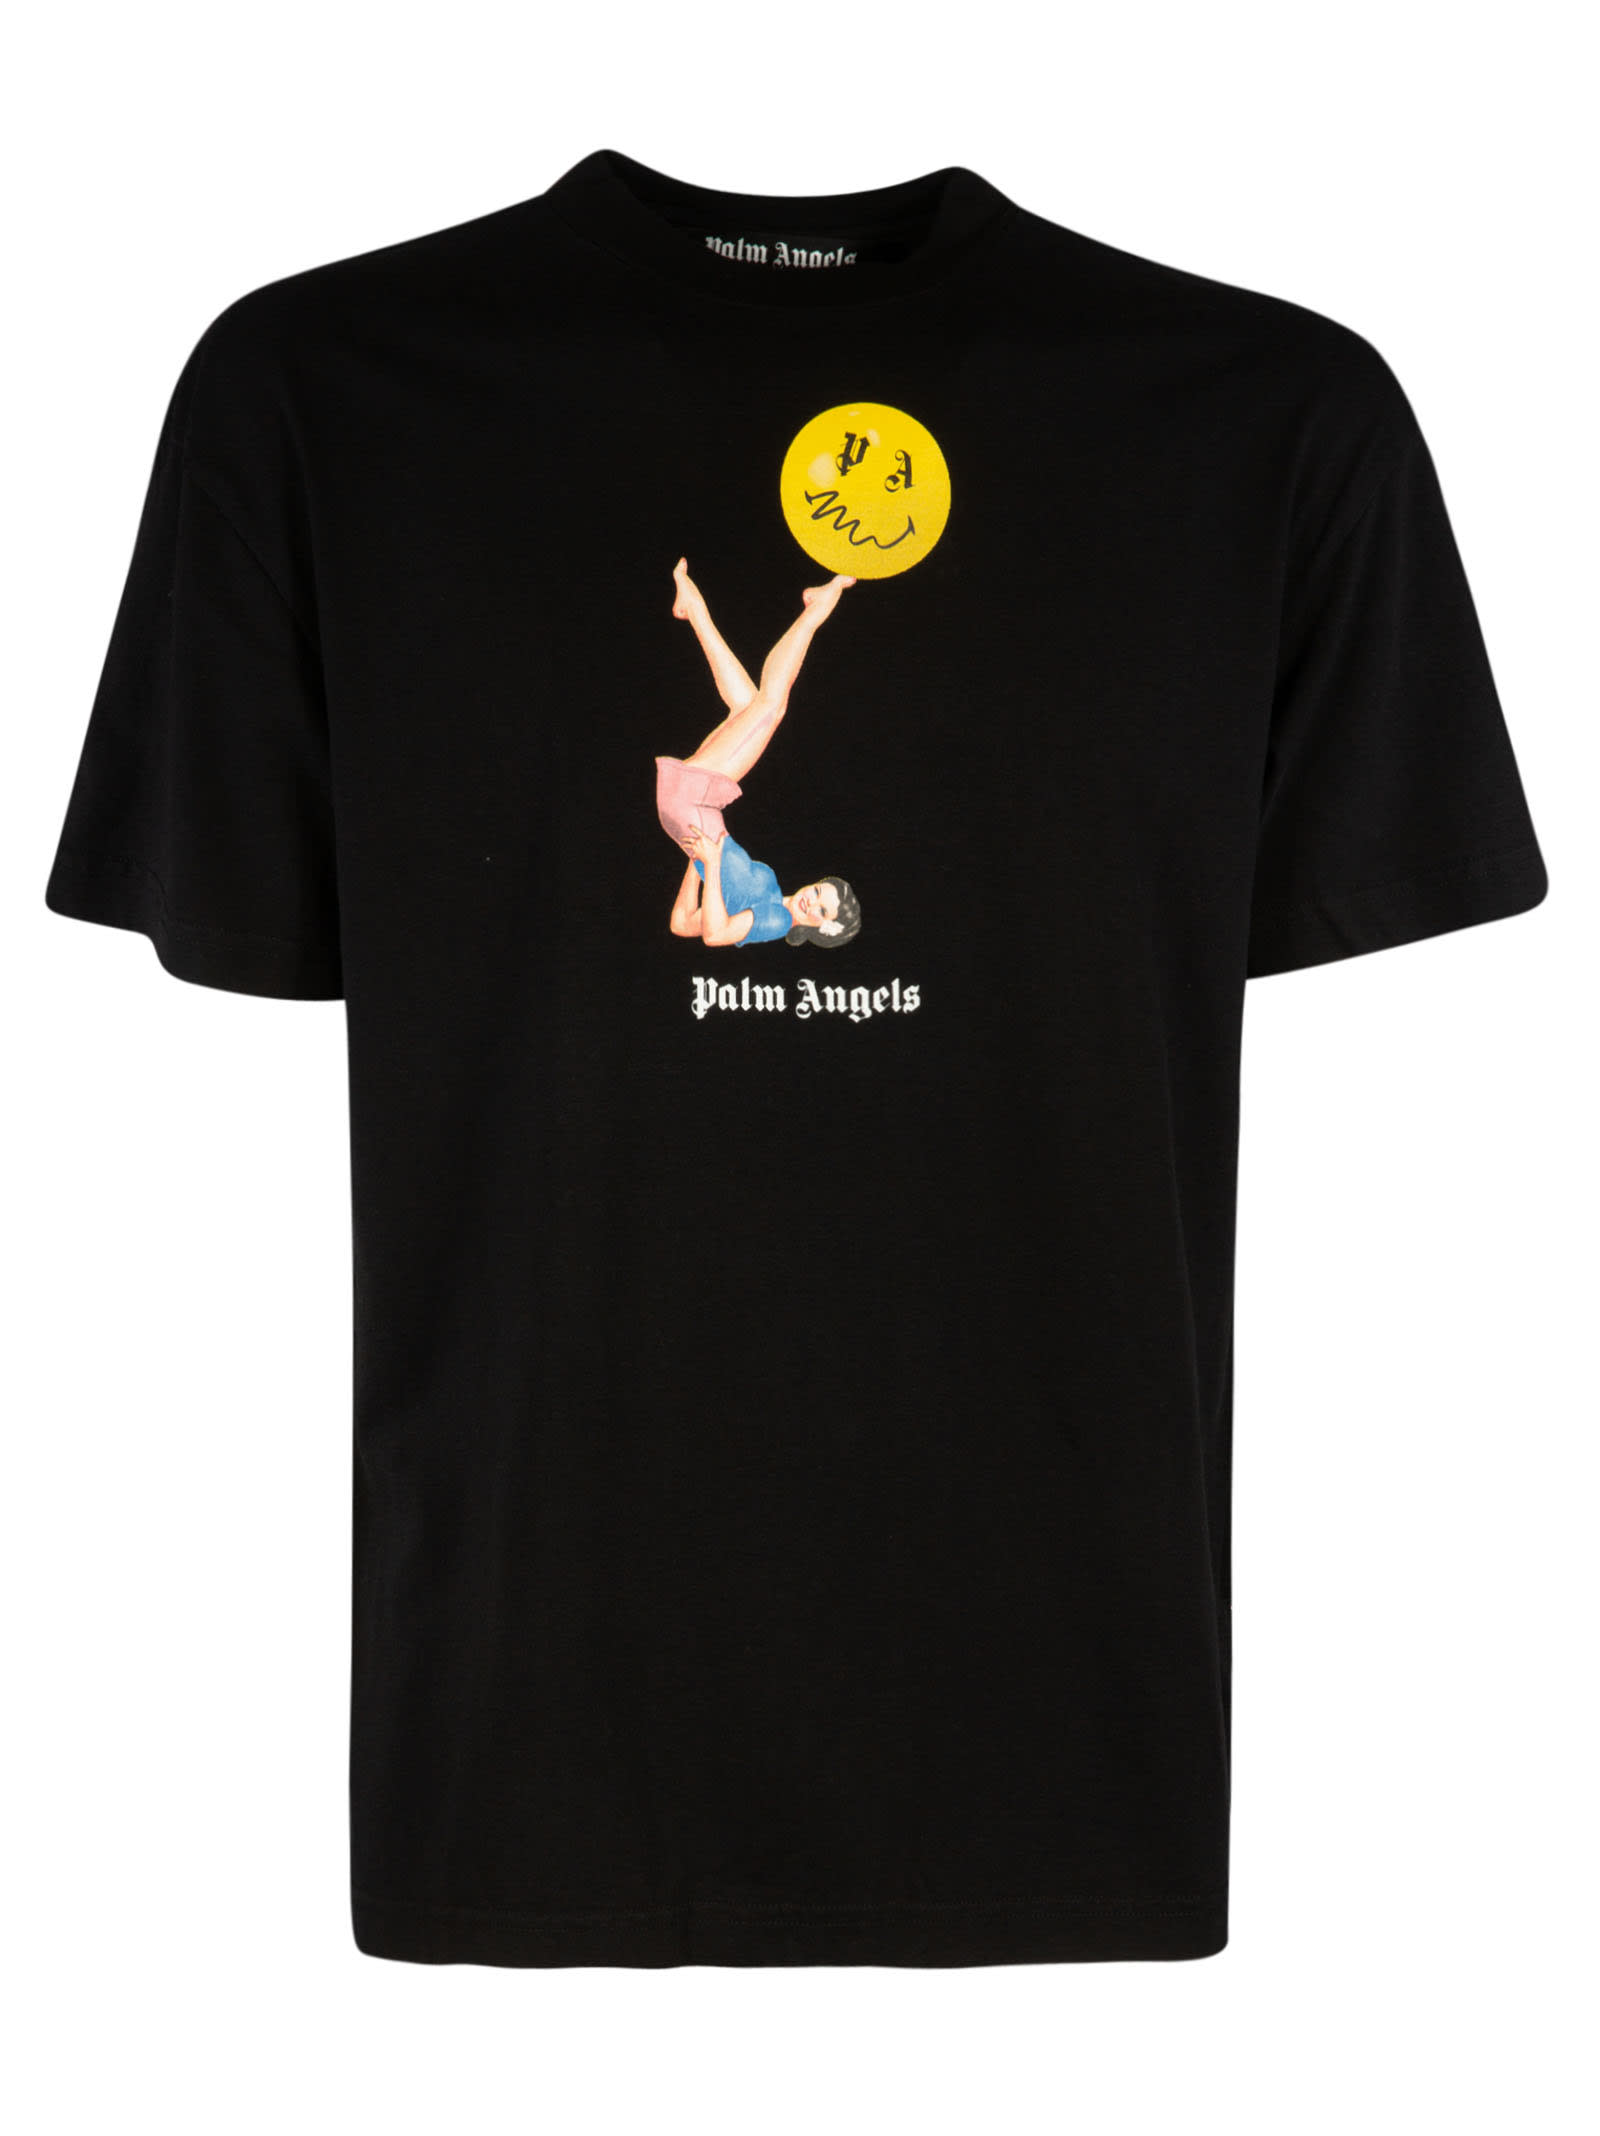 Palm Angels Juggler Pin-up T-shirt